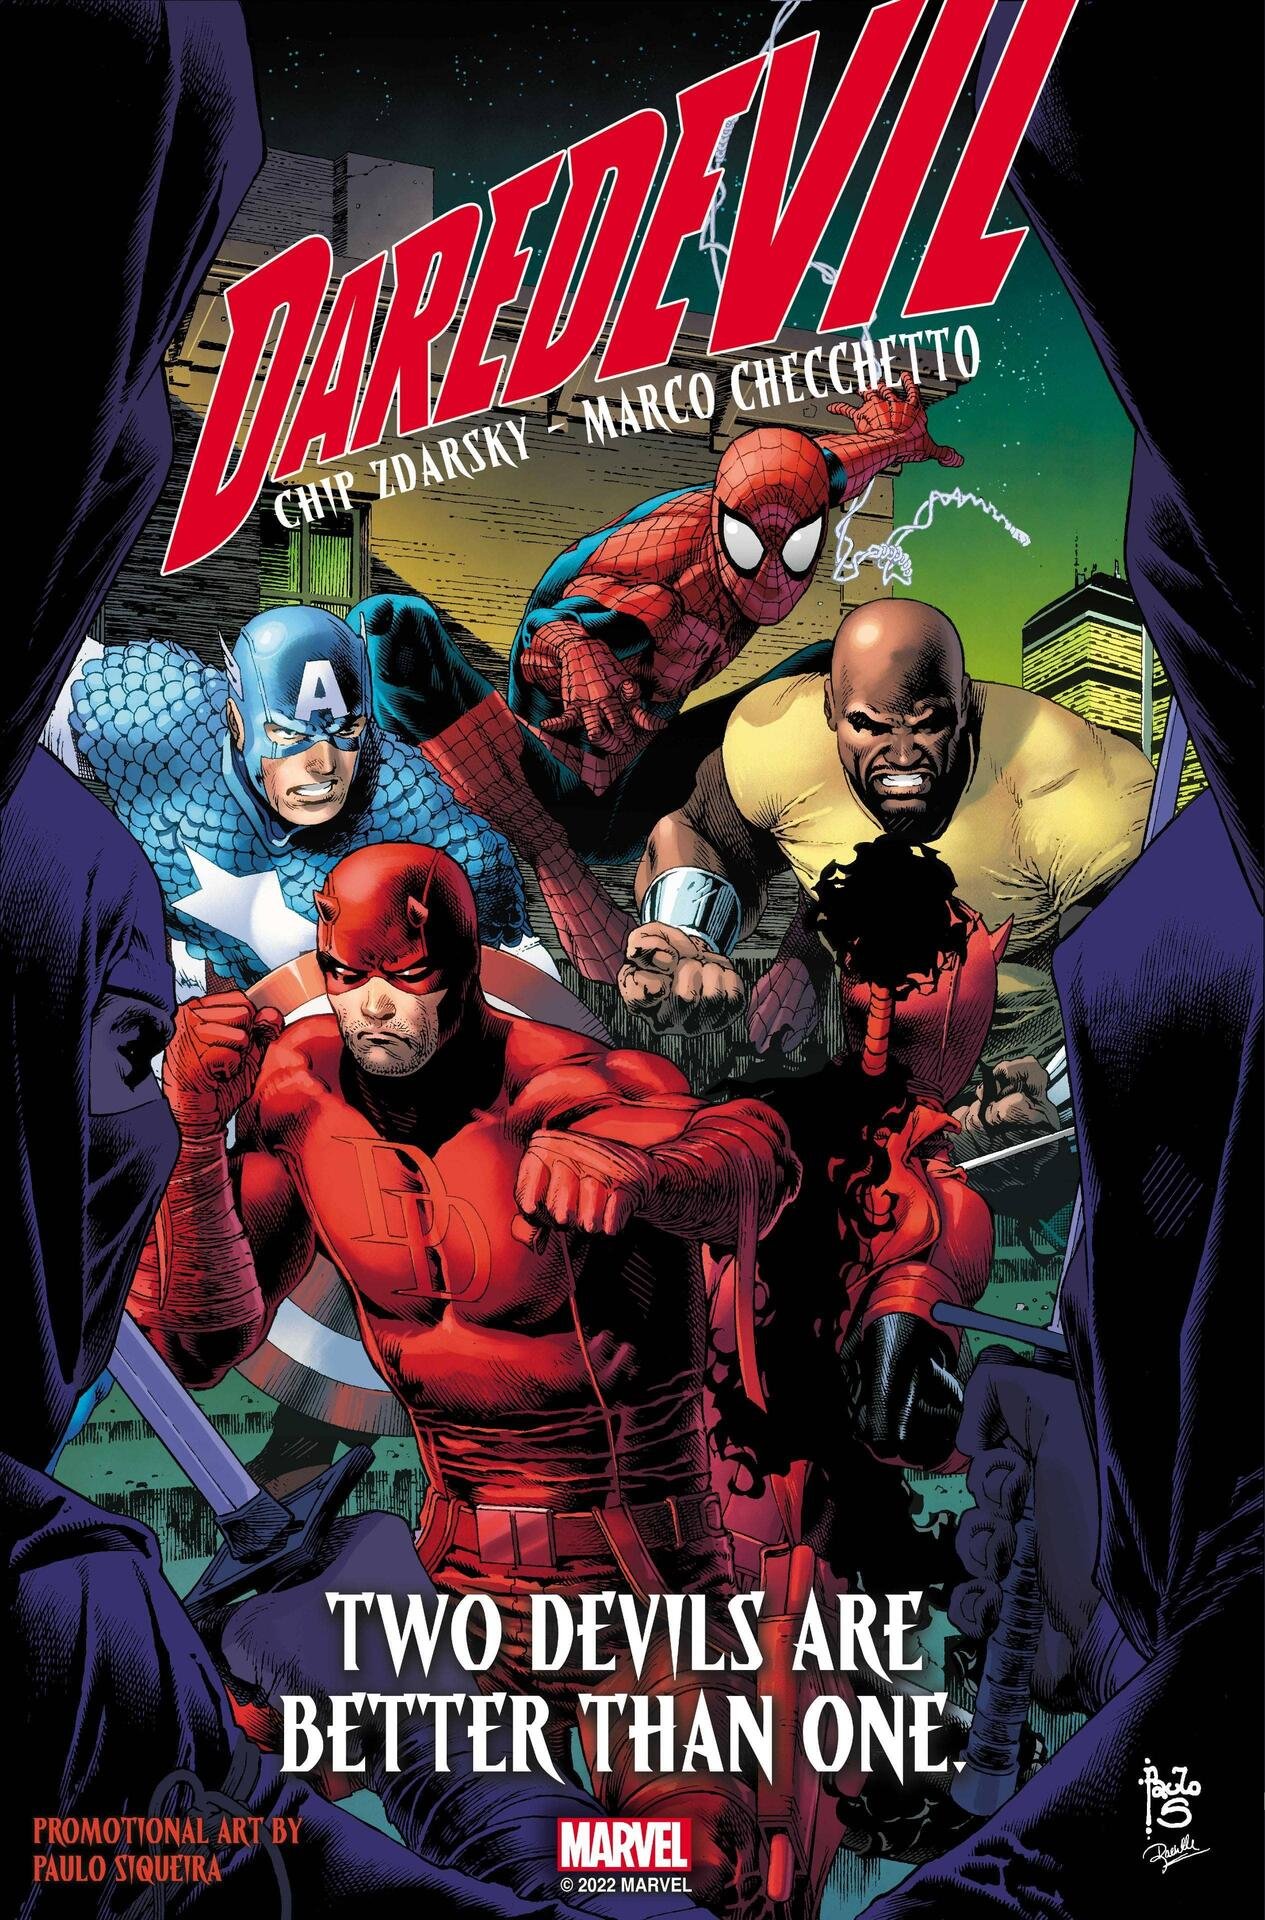 Immagine promozionale di Paulo Siqueira (e variant cover di Daredevil 4) con i due eroi contro Luke Cage, Spider-Man e Capitan America